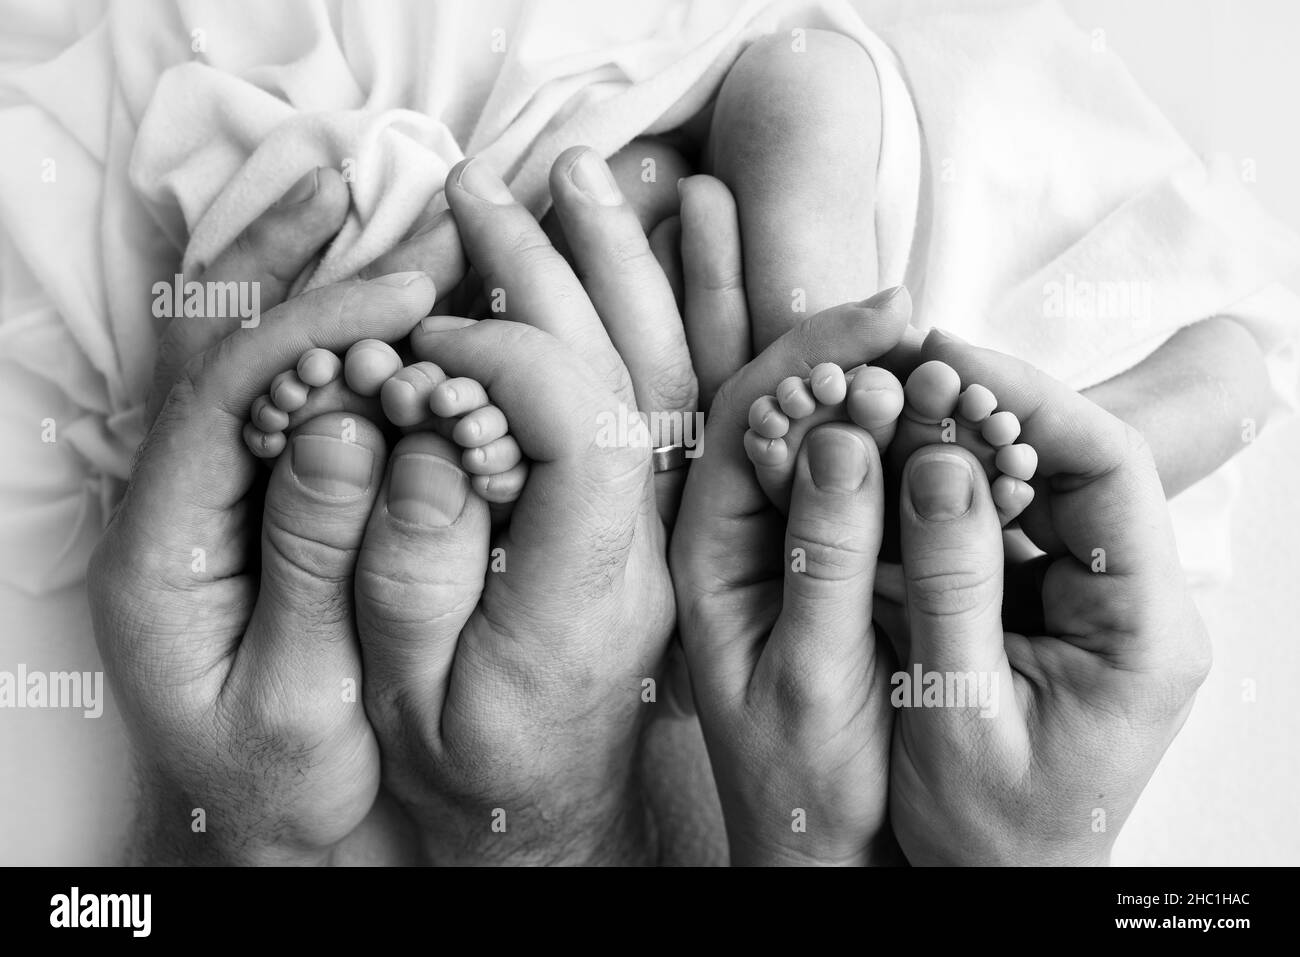 Füße neugeborener Zwillinge. Eltern, Vater Mutter halten neugeborene Zwillinge an den Beinen. Stockfoto